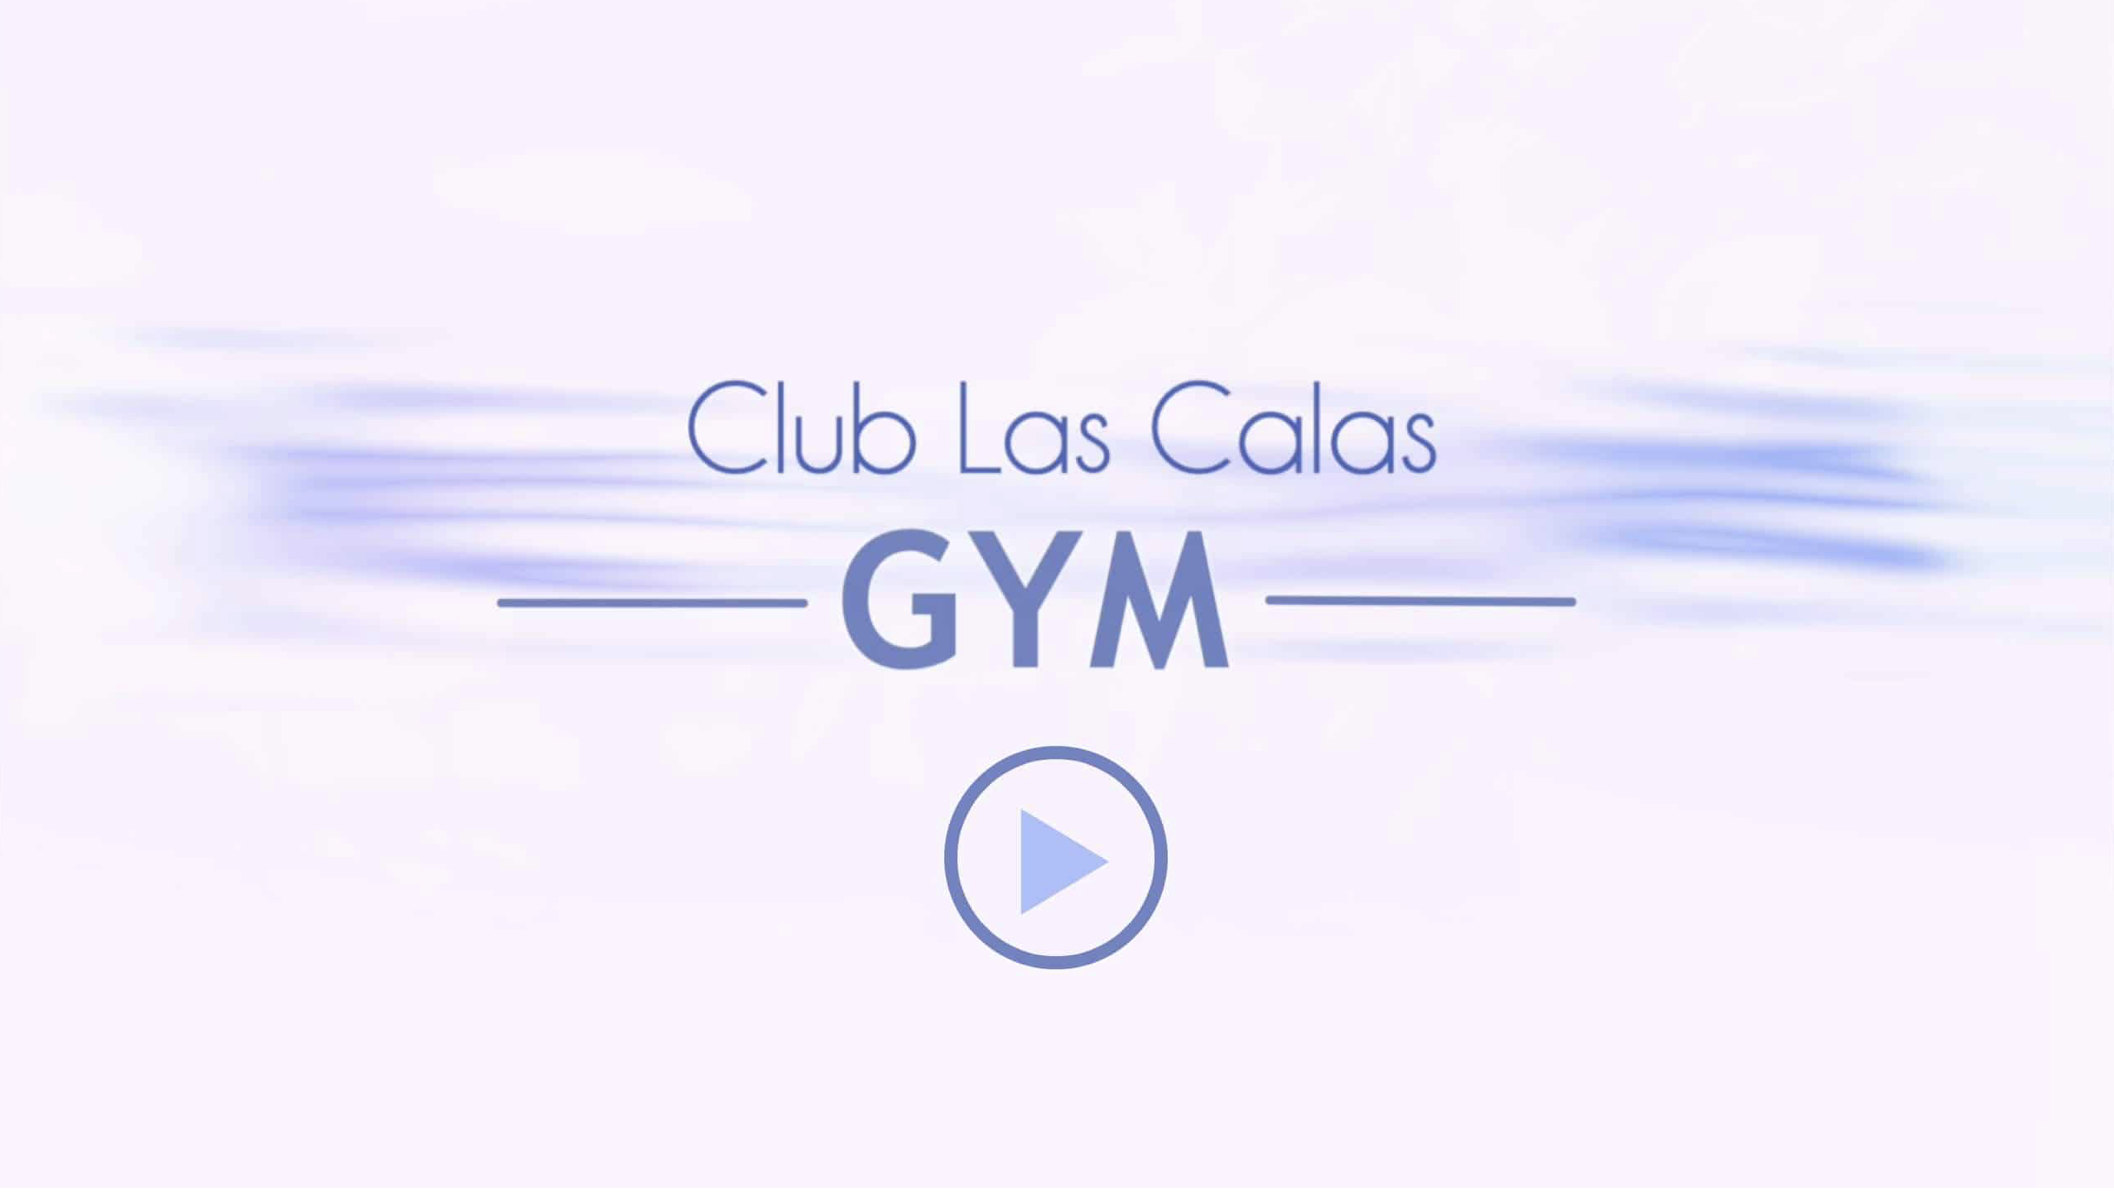 Club Las Calas Gym Lanzarote